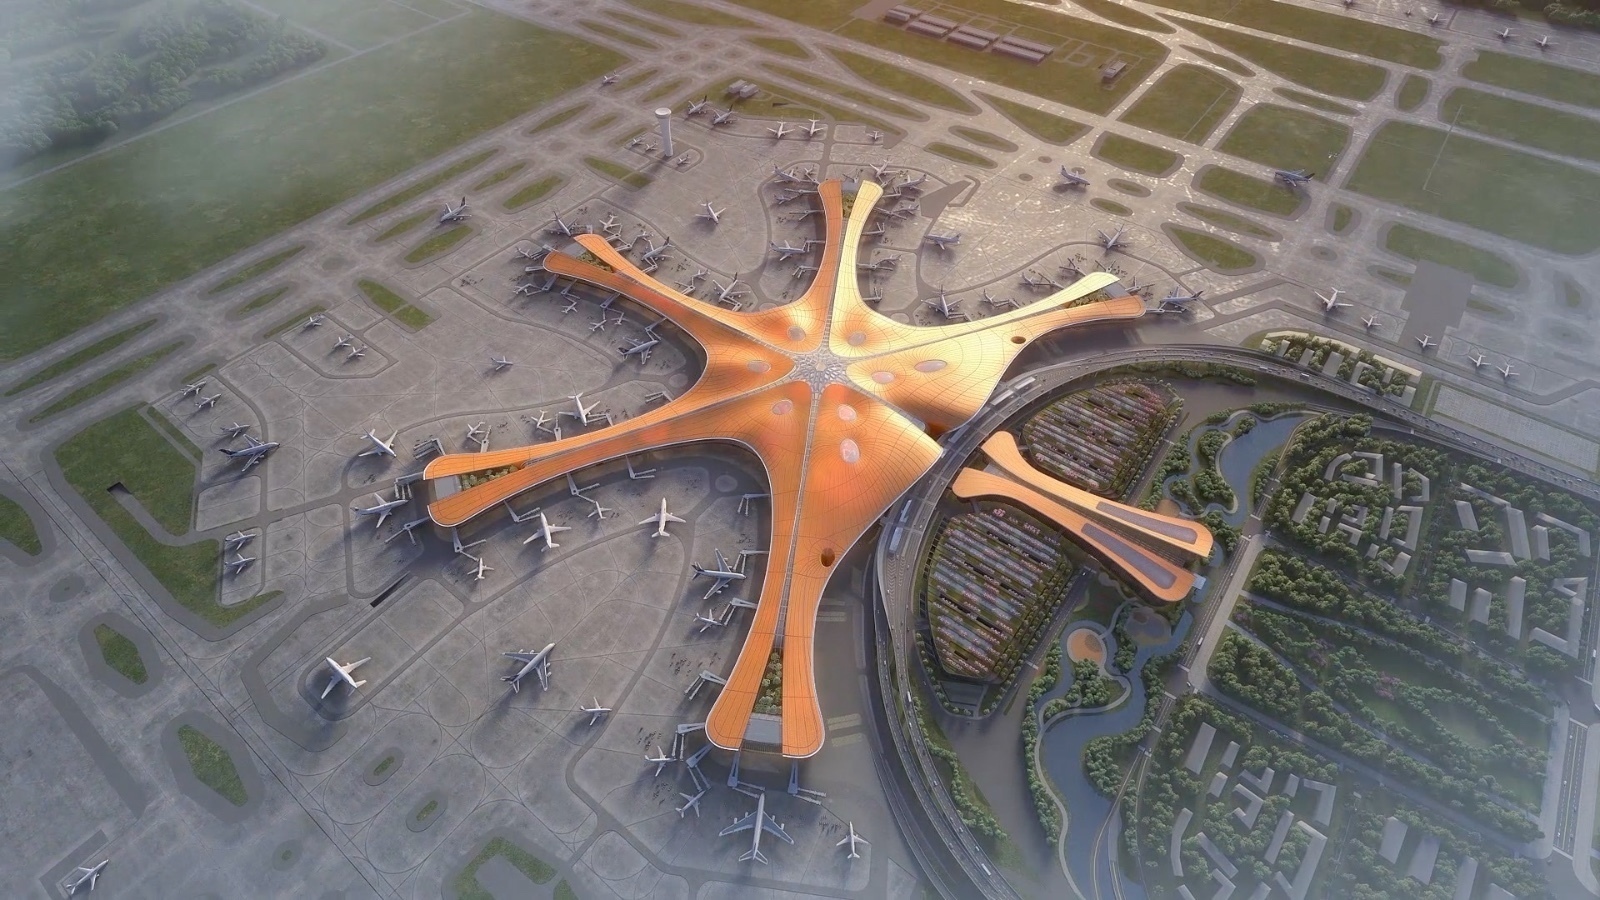 大兴国际机场为什么设计成"凤凰展翅"形态?为壮美吗